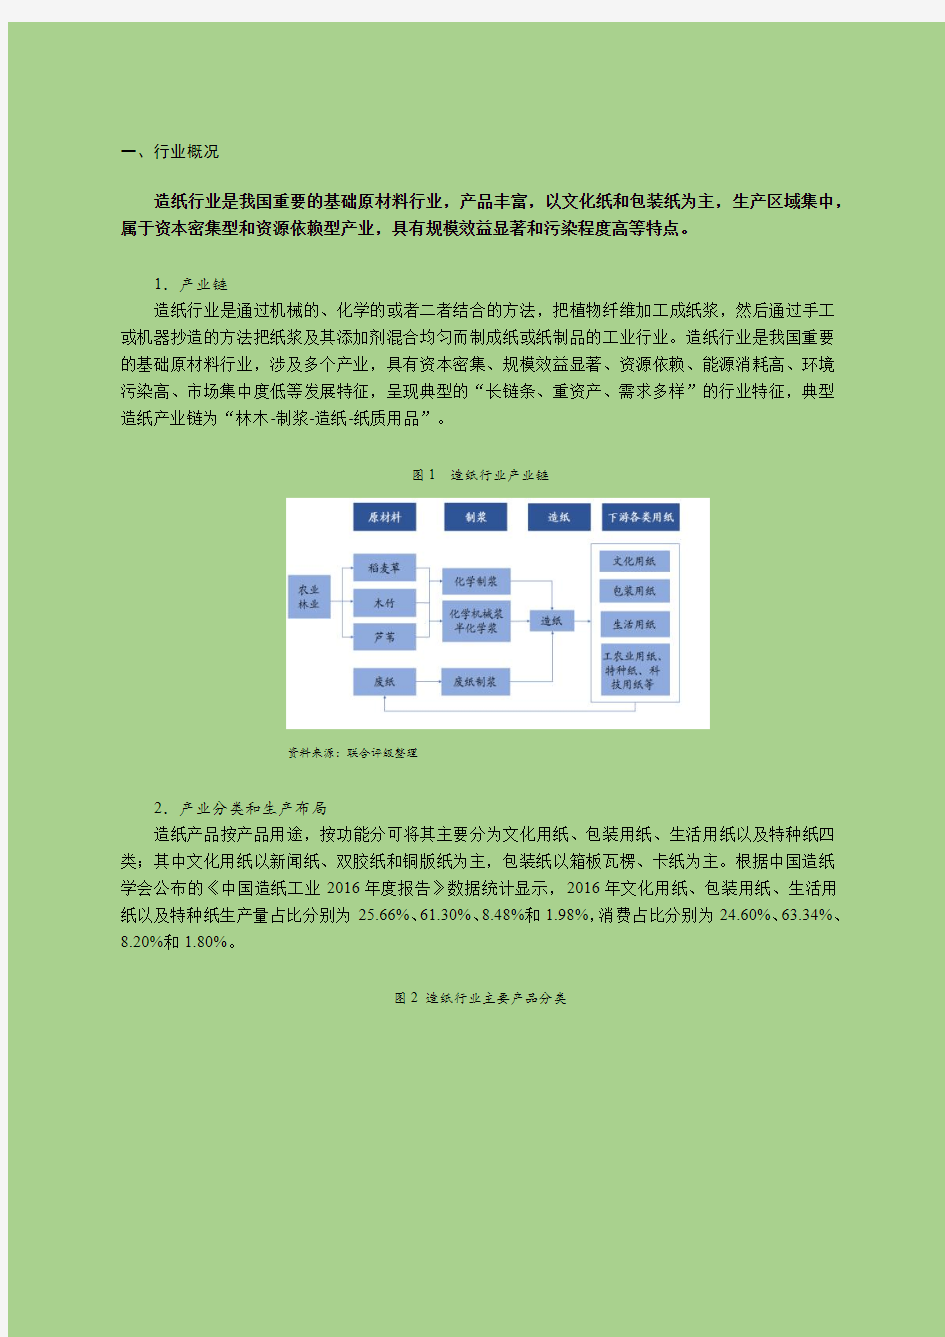 2018年中国造纸行业研究报告